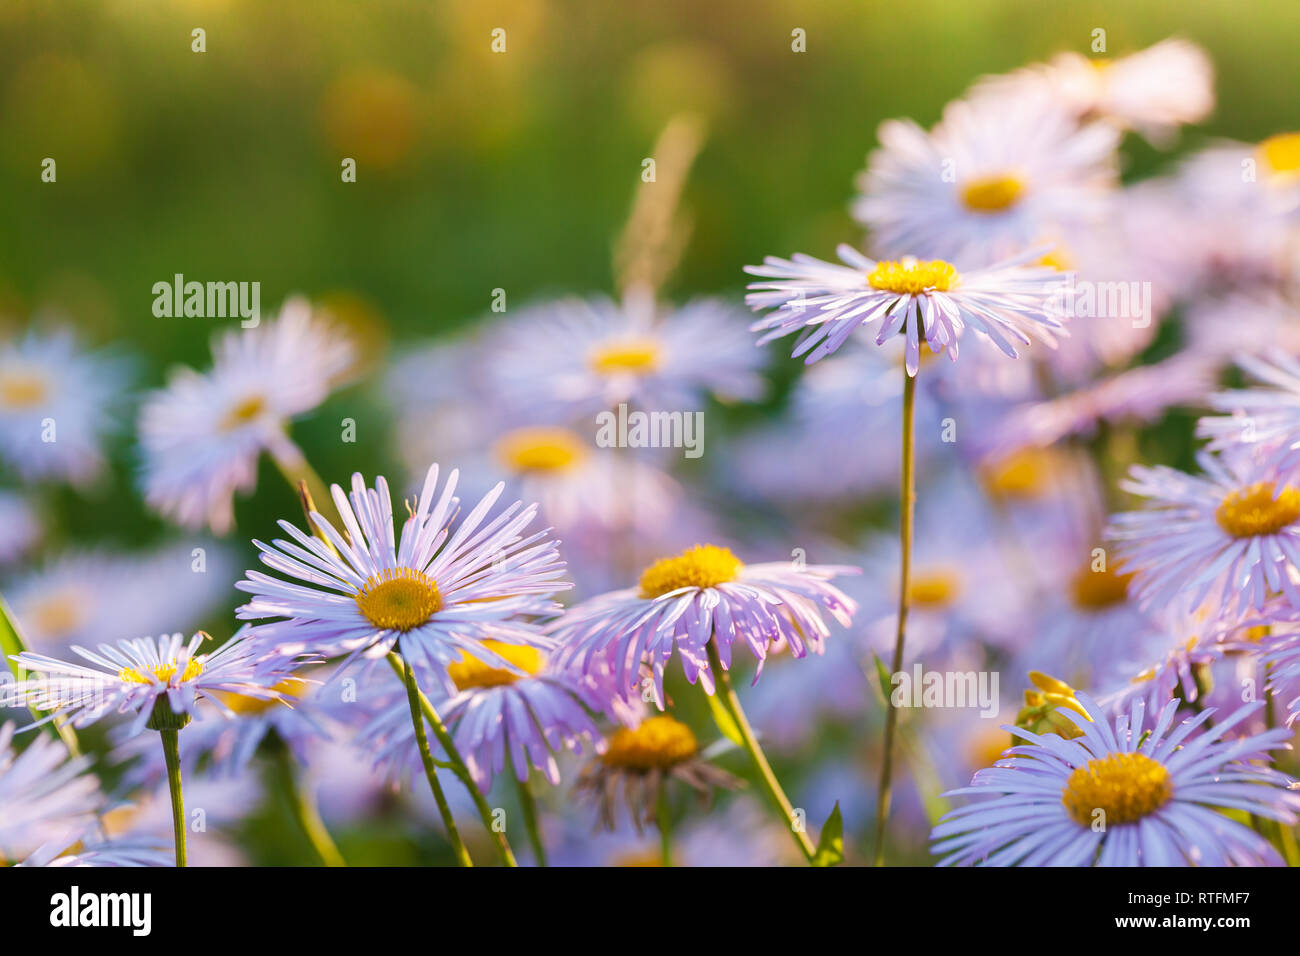 Brillantes flores en el jardín. Aster alpinus o aster alpino es una planta ornamental nativa de las montañas de Europa Foto de stock